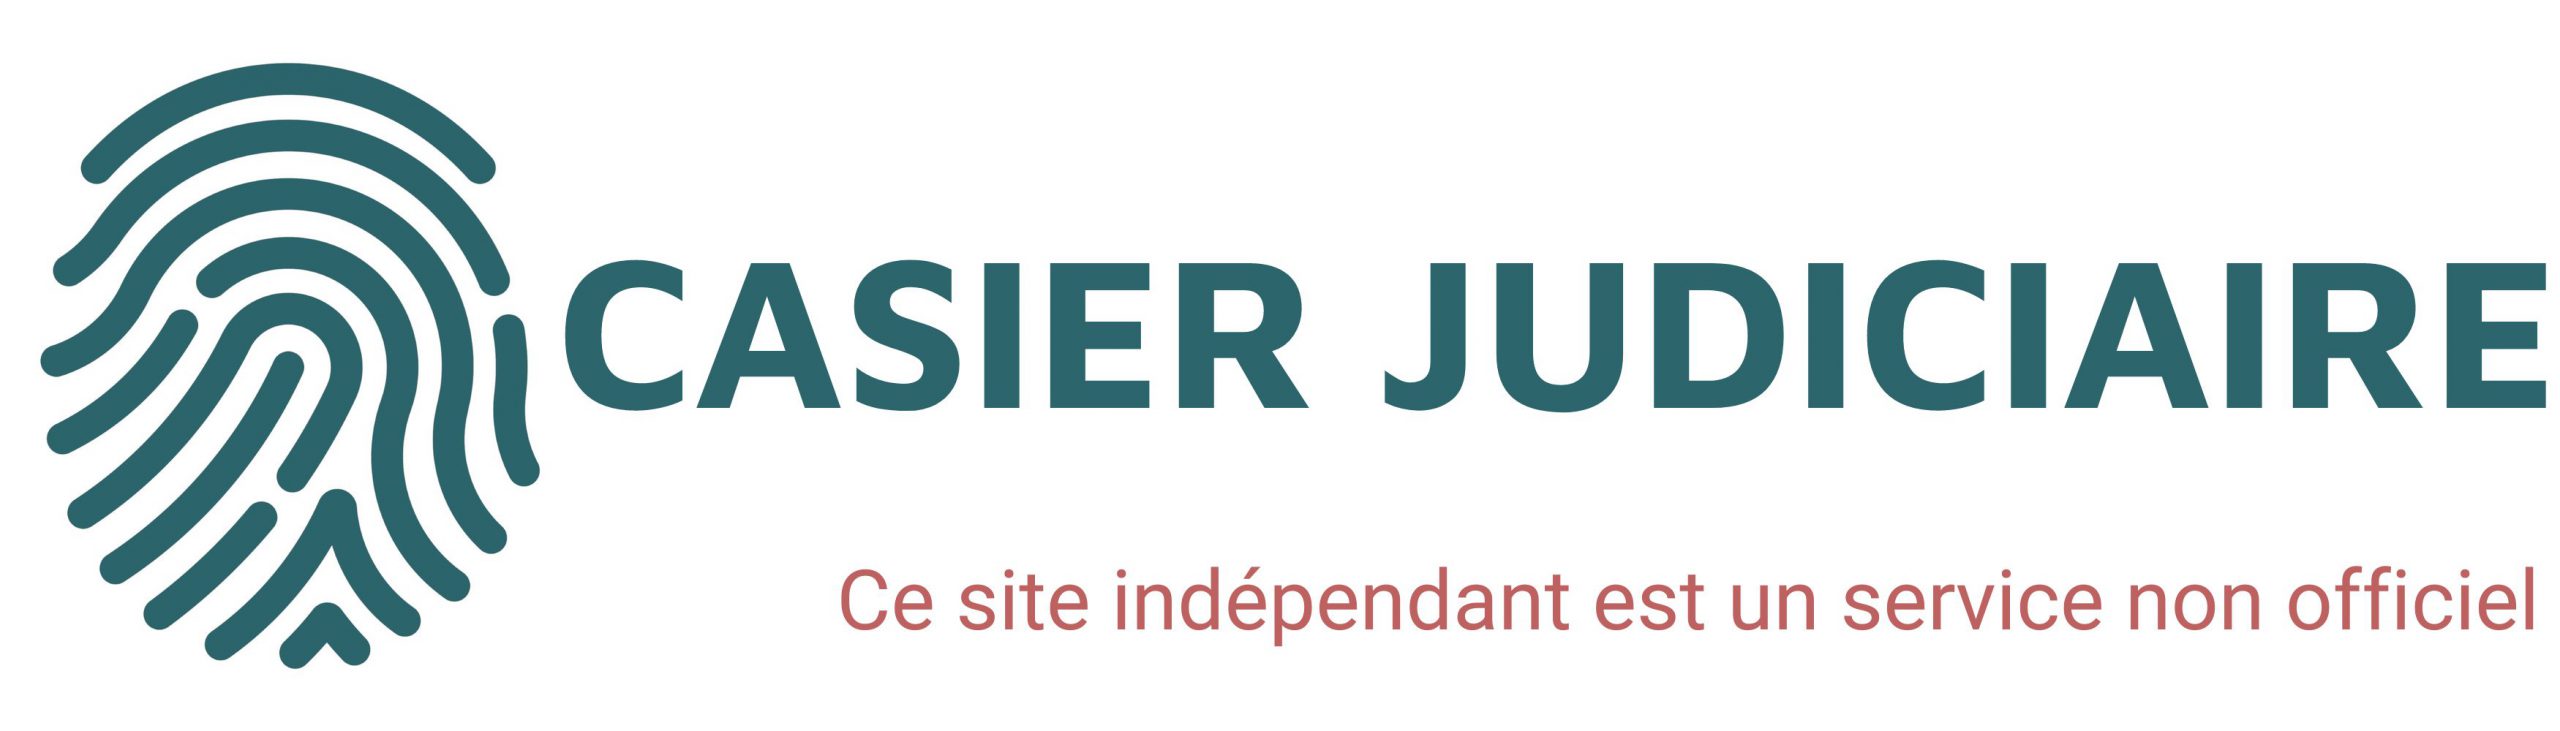 casier judiciaire logo